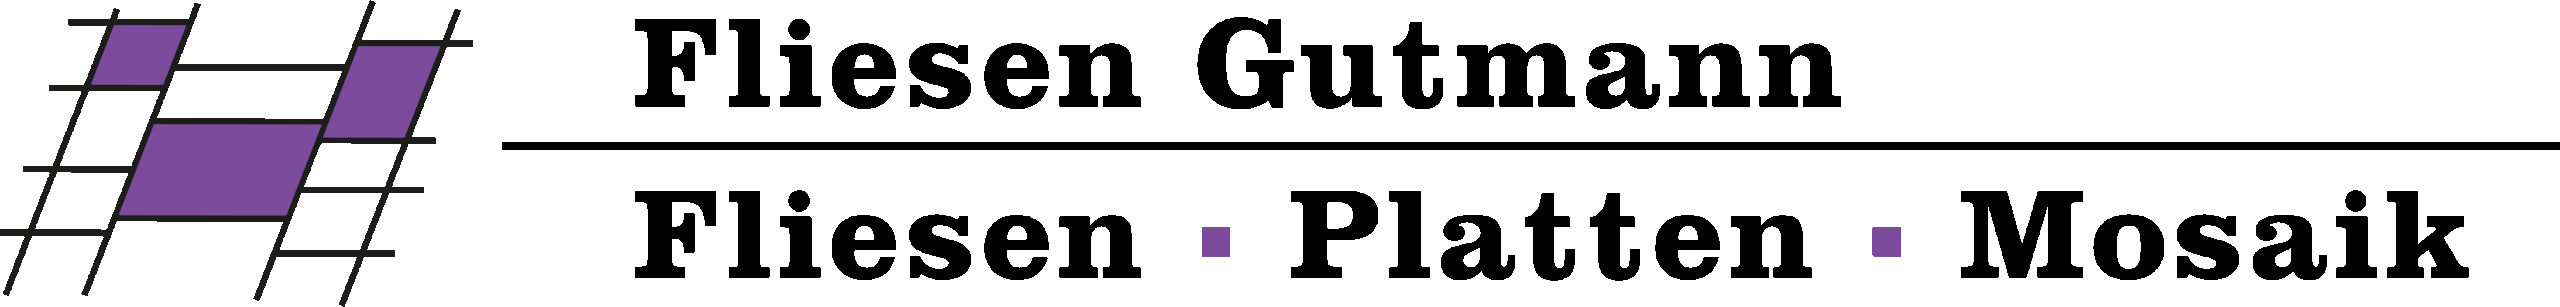 Fliesen Gutmann Logo